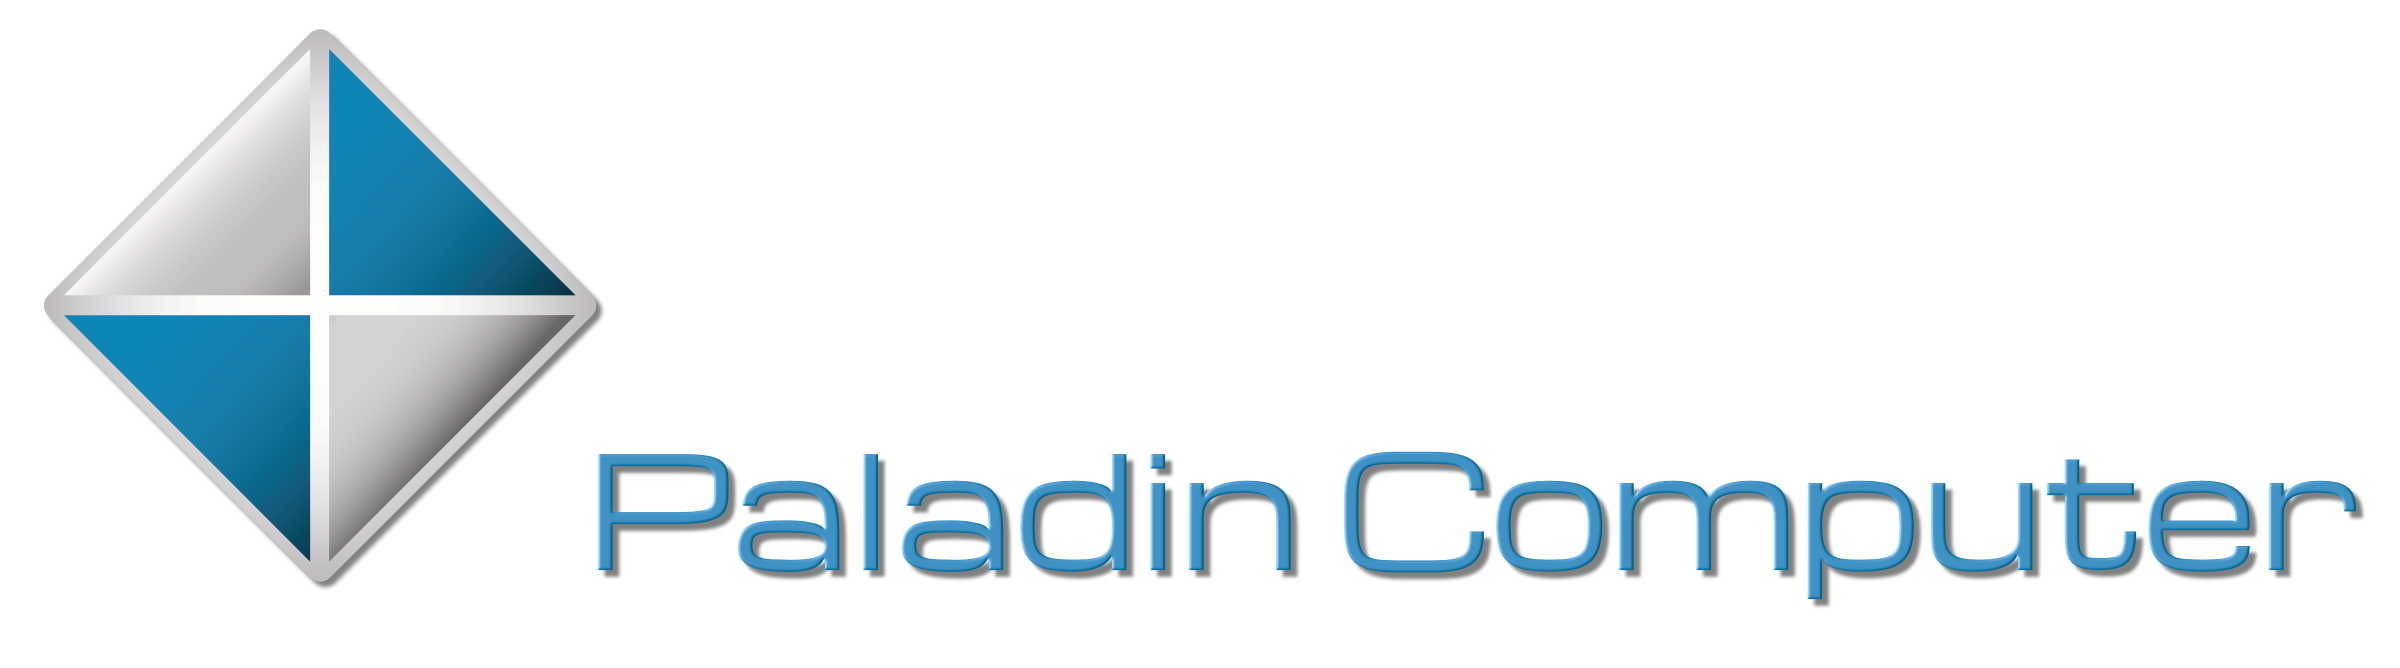 Paladin Computer GmbH